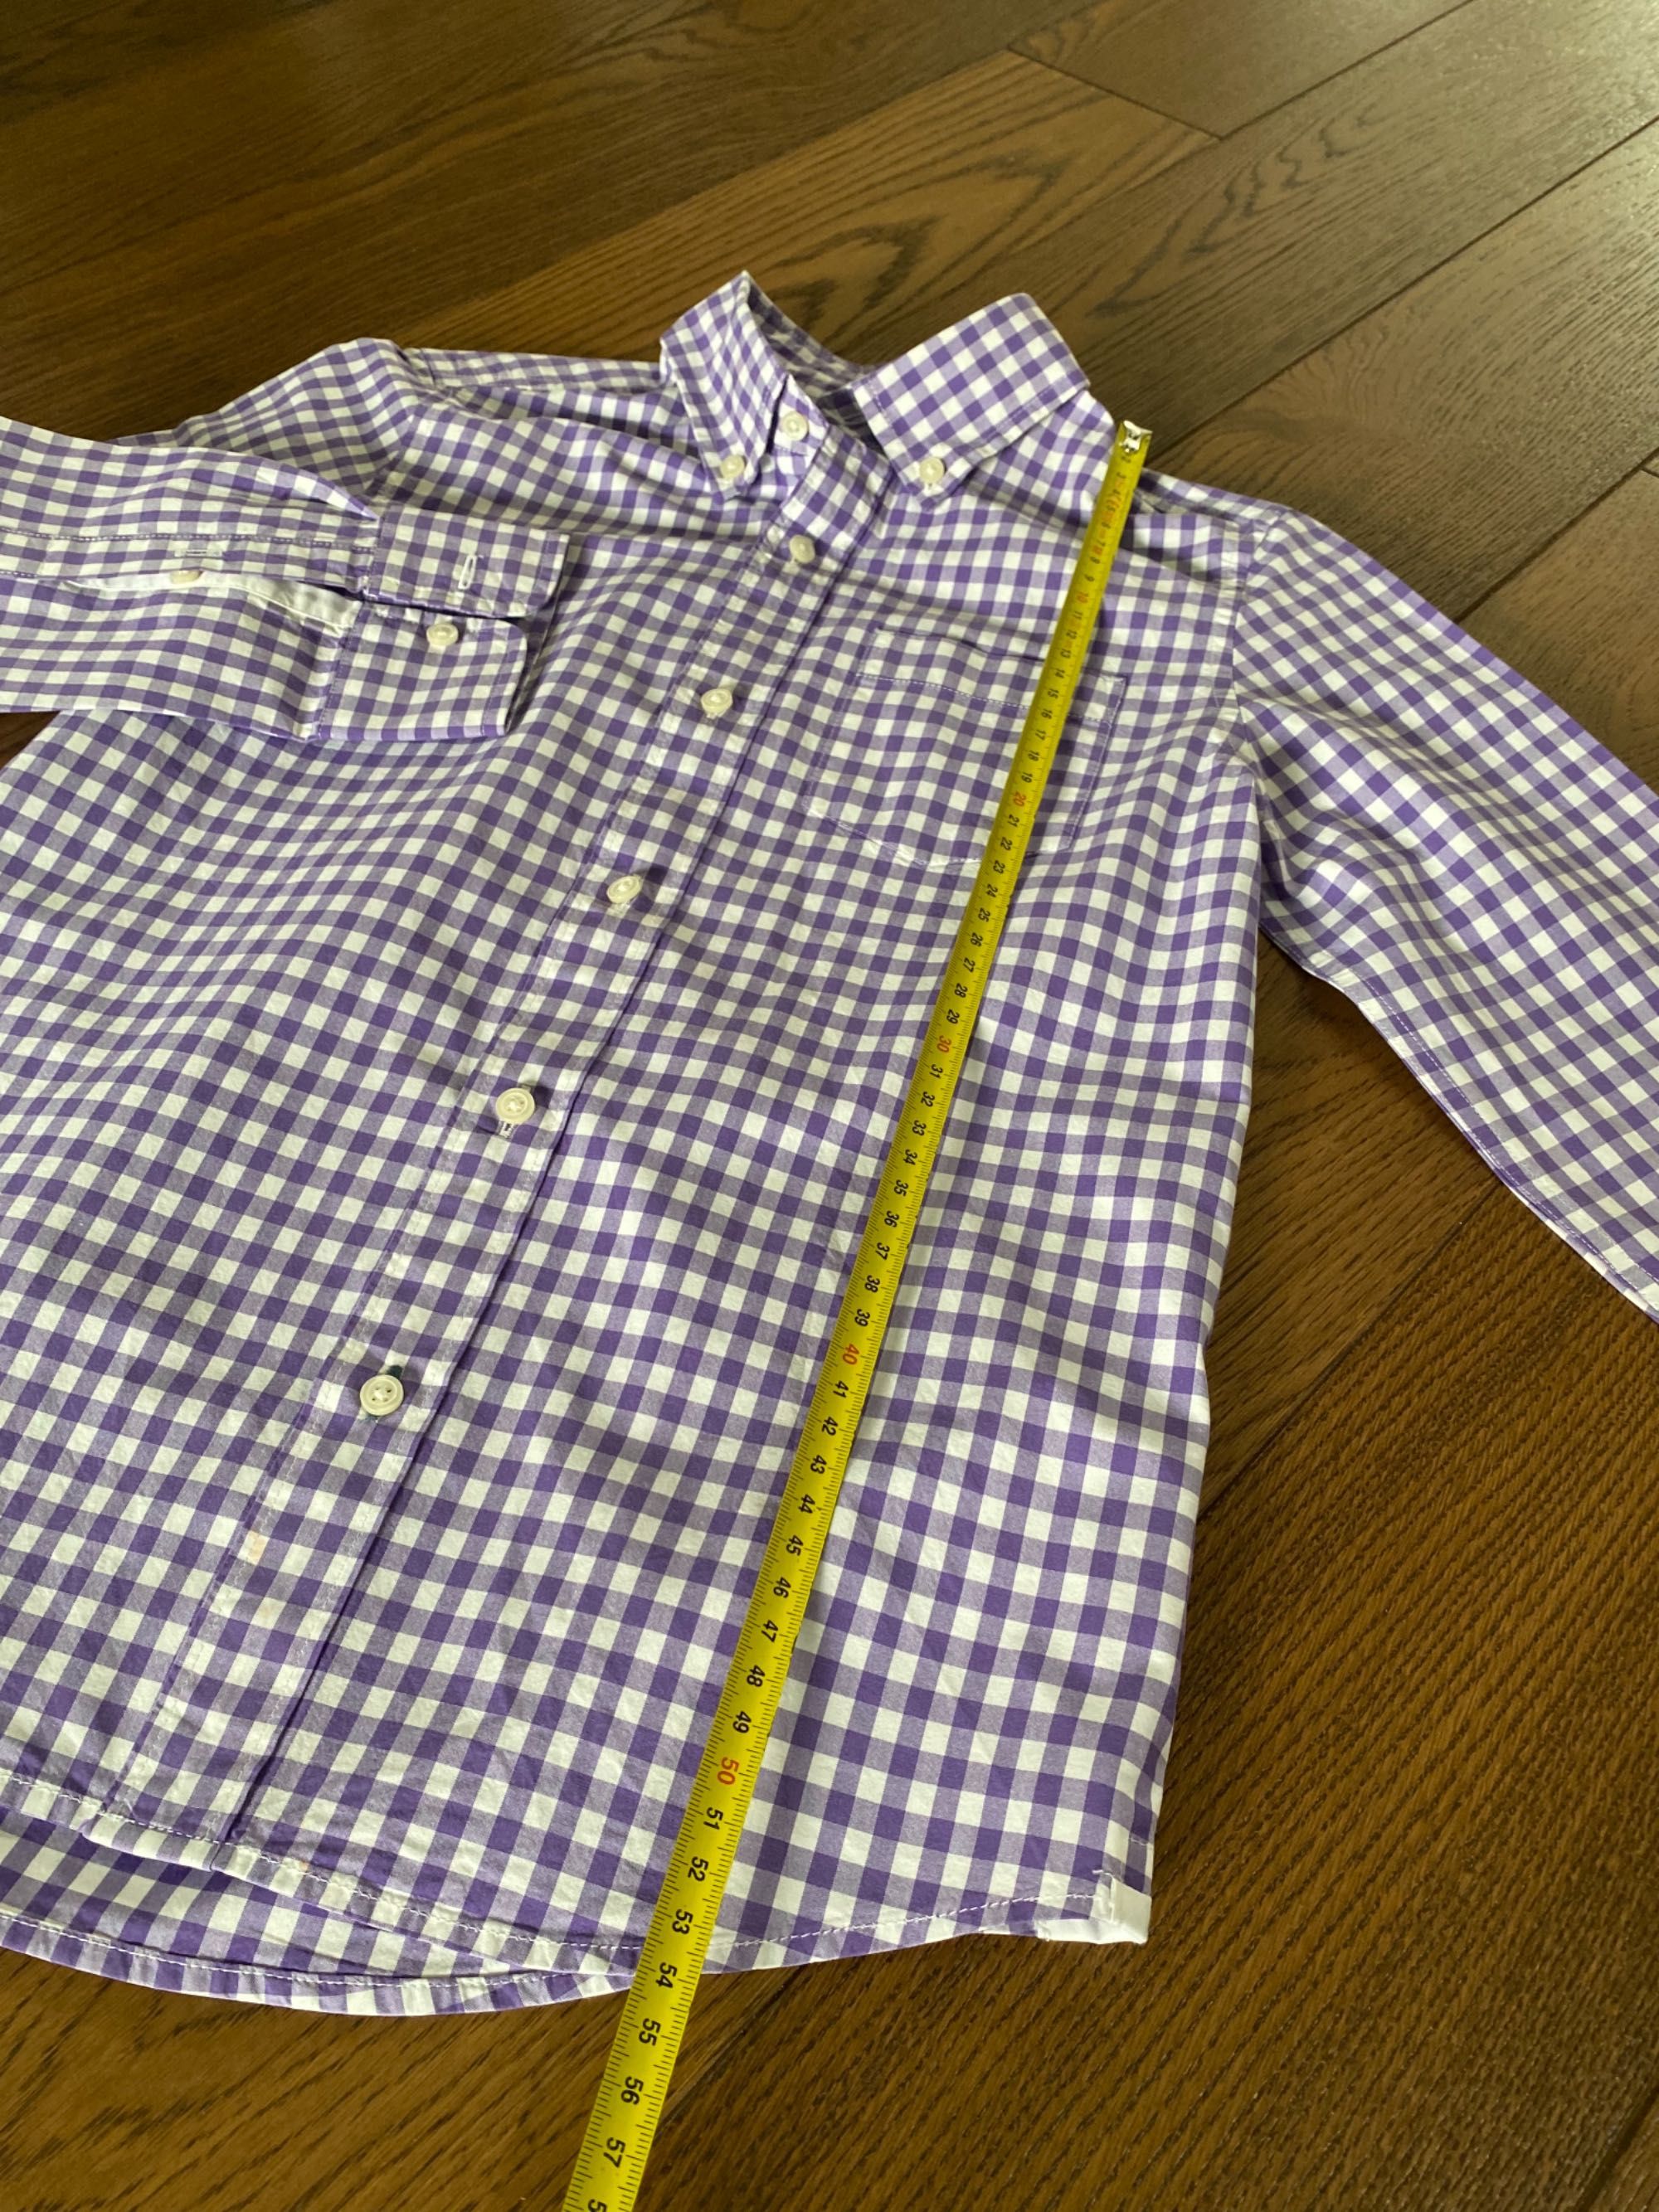 Crewcuts koszula z długim rękawem w kratkę fioletowa biała